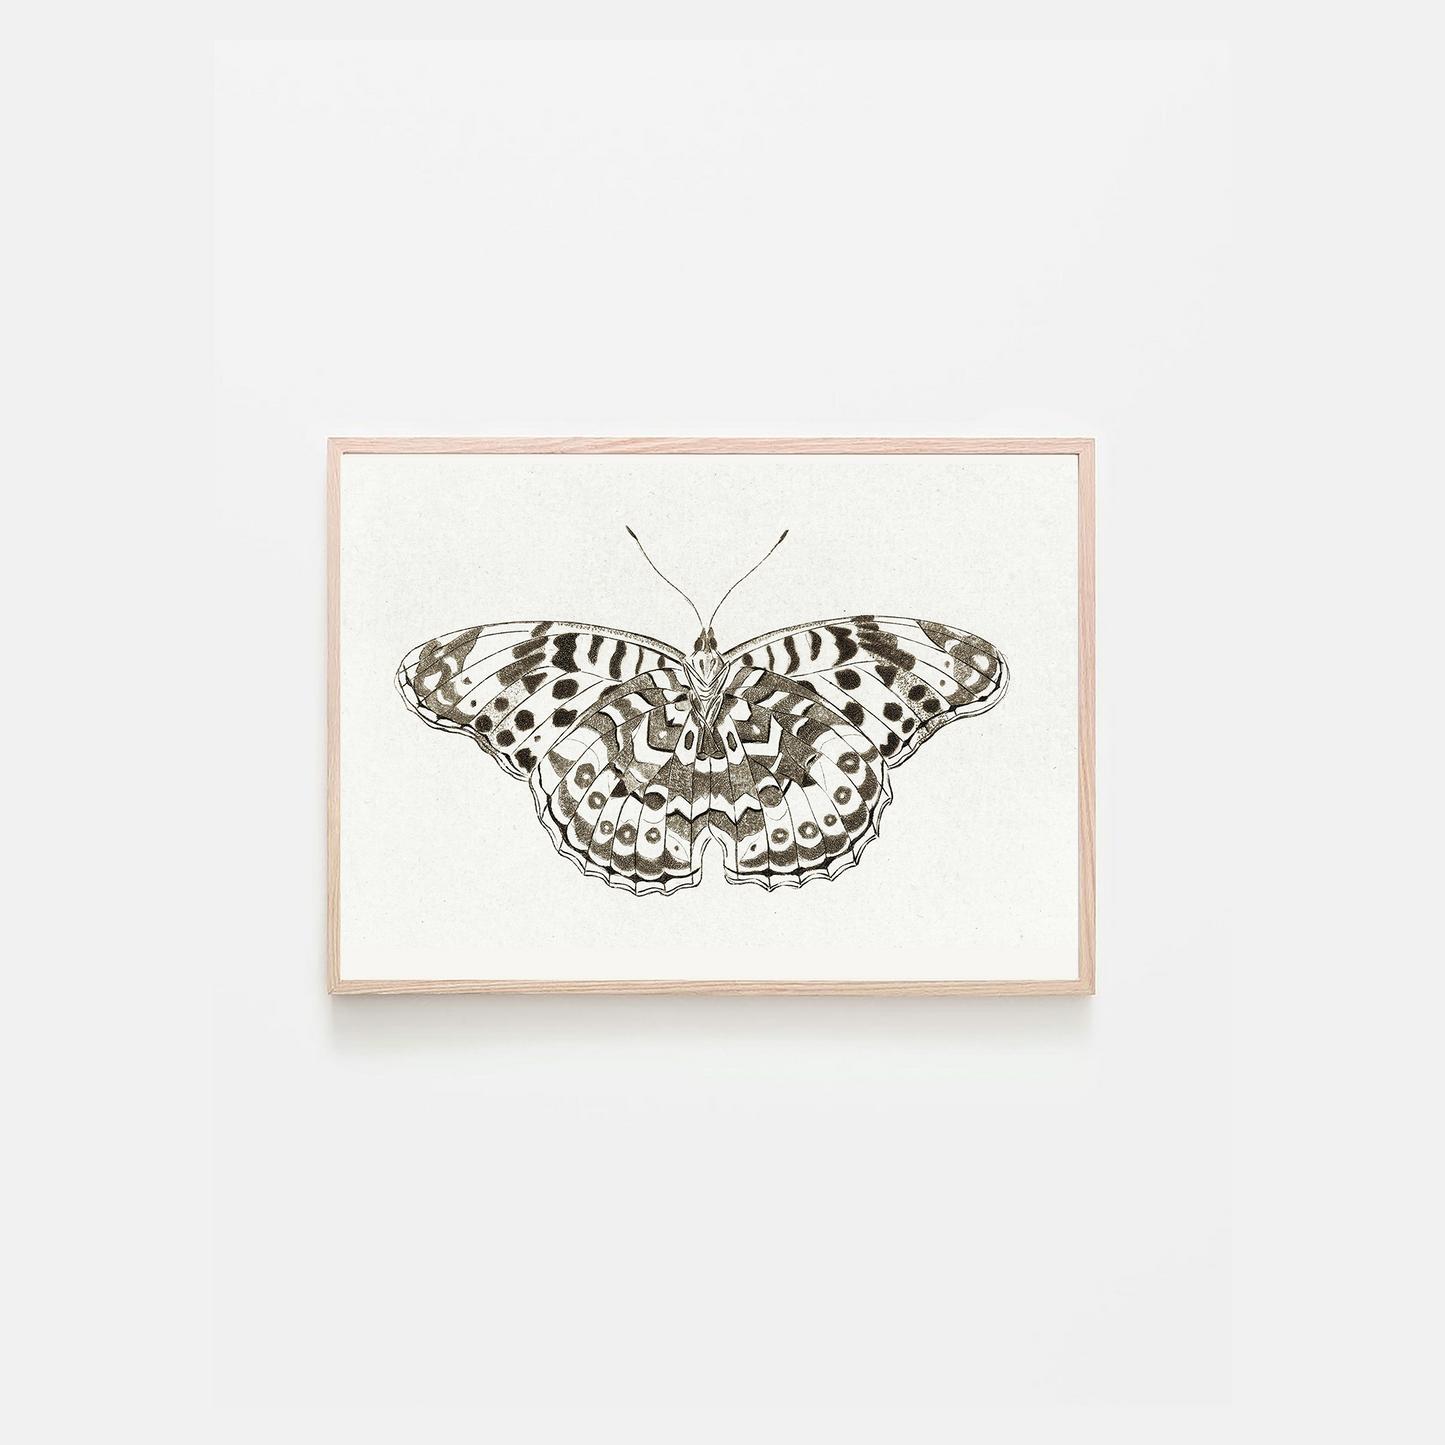 Black & White Geometric Butterfly – Vlinder by Cornelis Ploos van Amstel